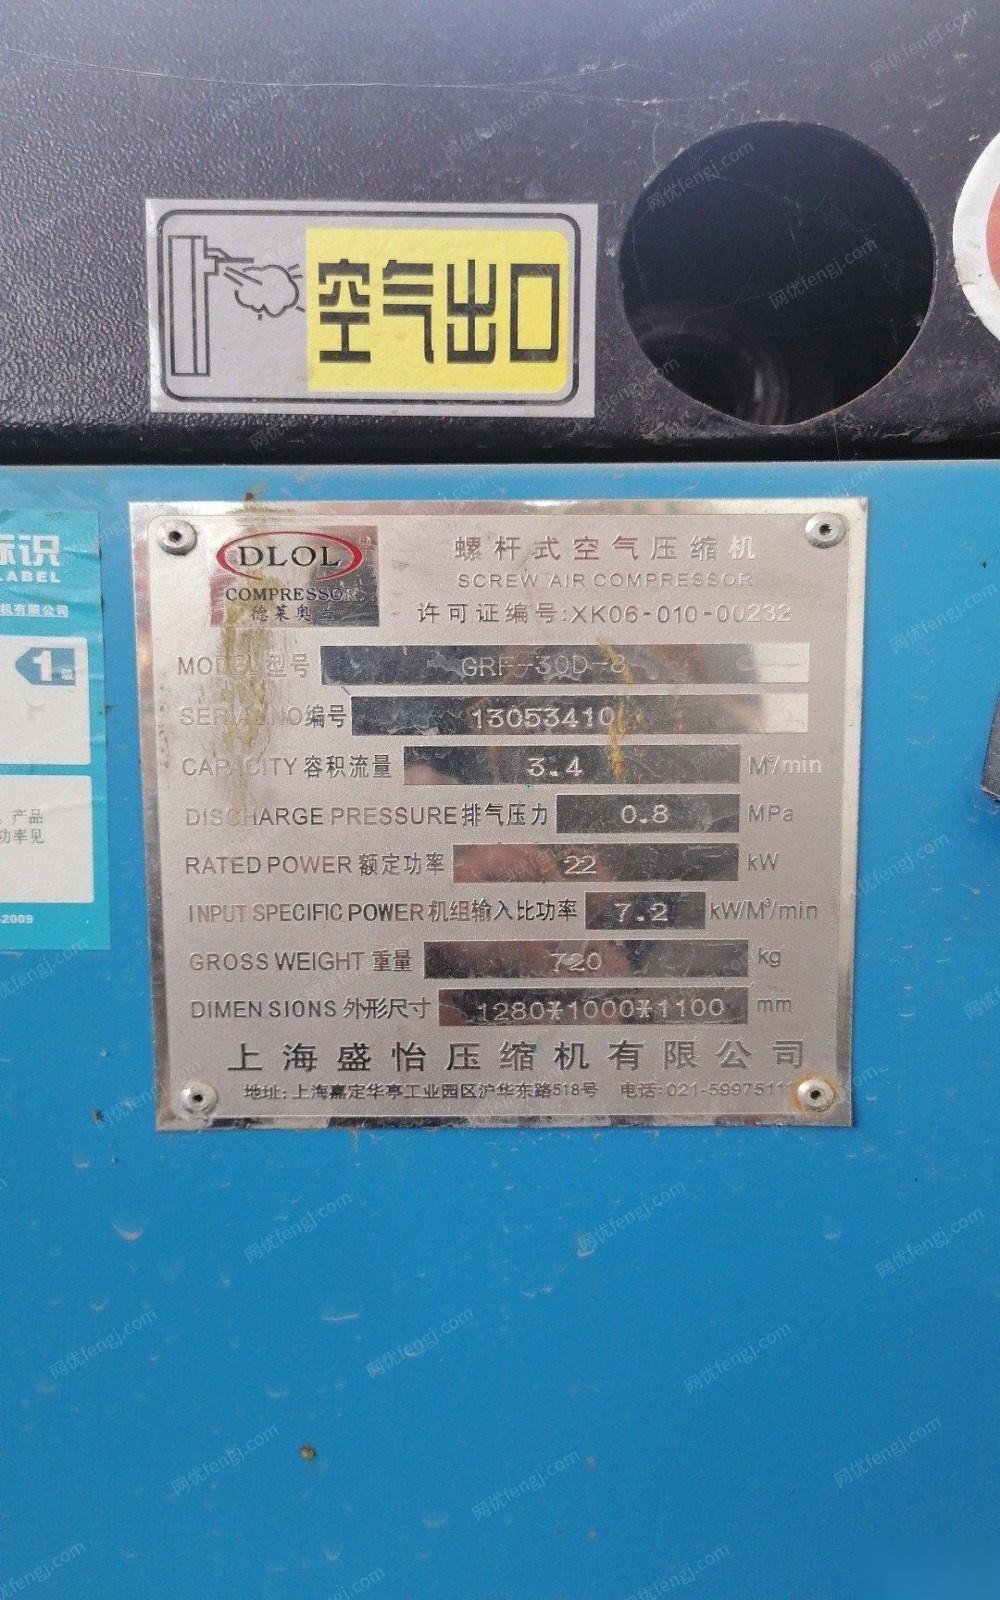 北京通州区闲置9成新2017年上海盛怡螺杆式空气压缩机一台 10000元出售